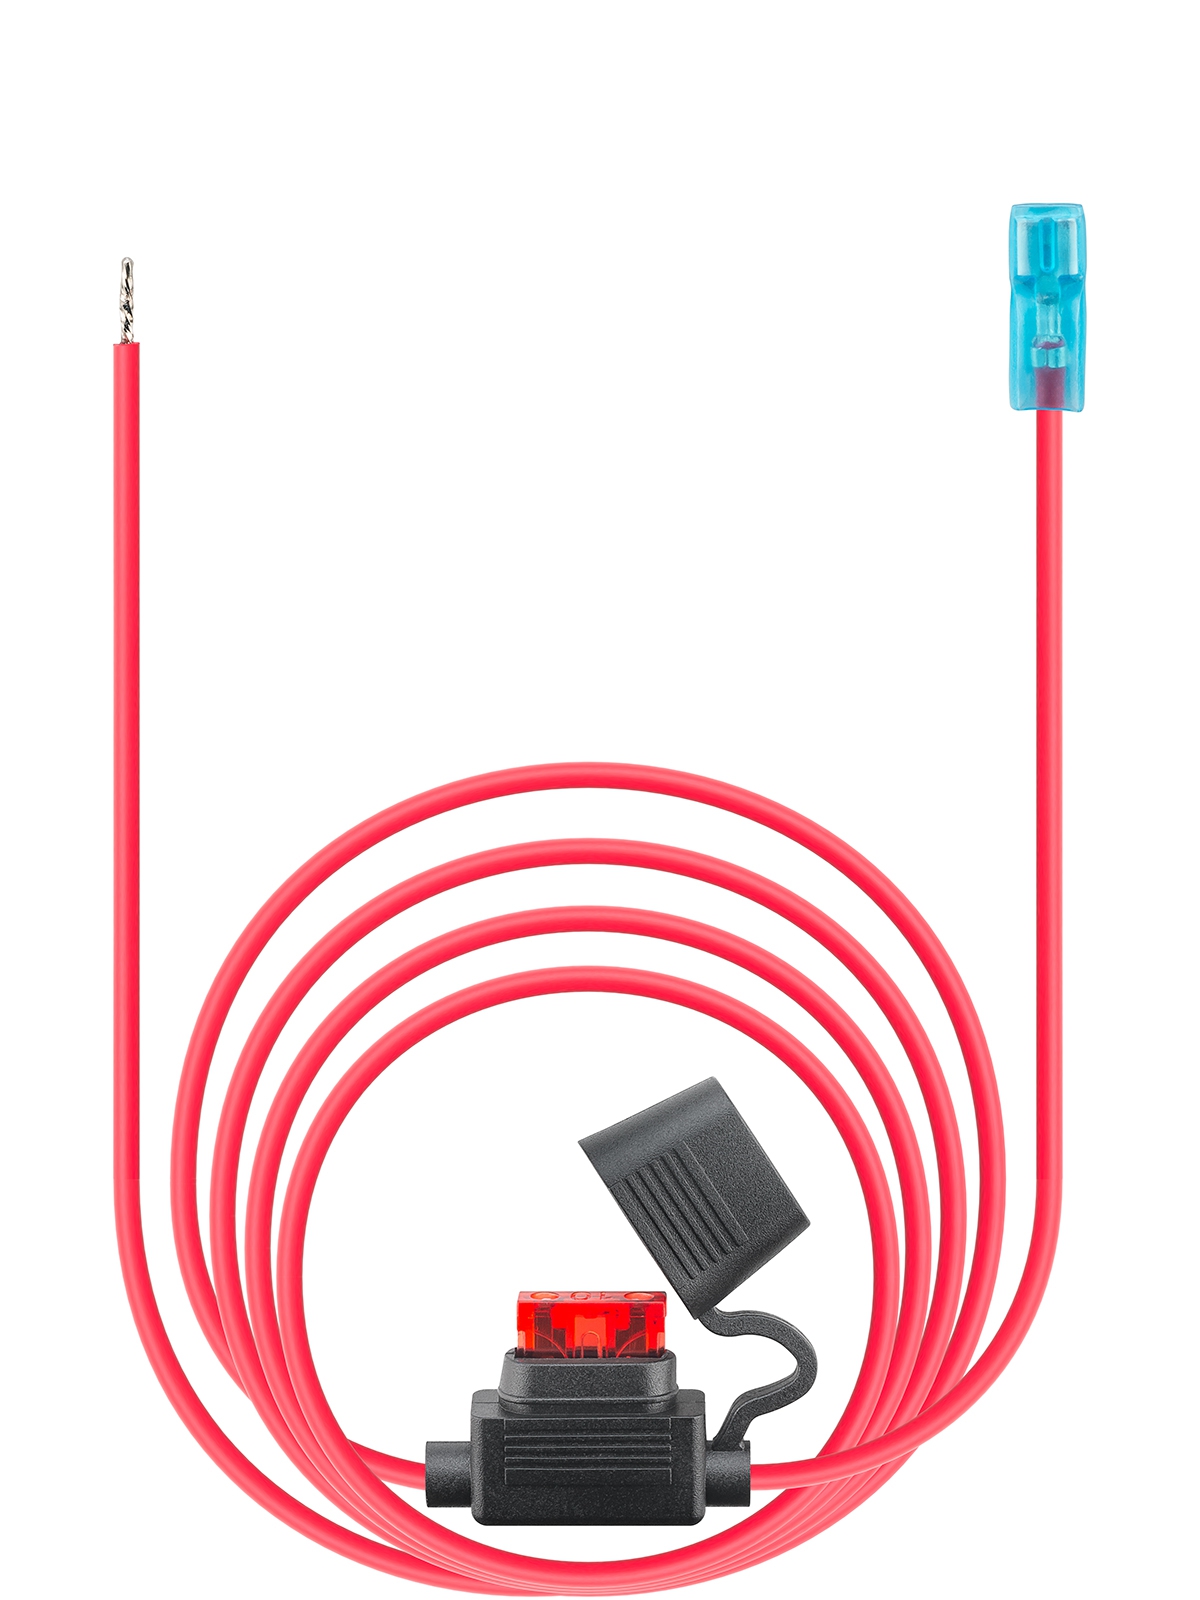 Comount Anschlusskabel für USB Einbaucharger - inkl. 10A Sicherung, 2 m Kabellänge, offenes Ende